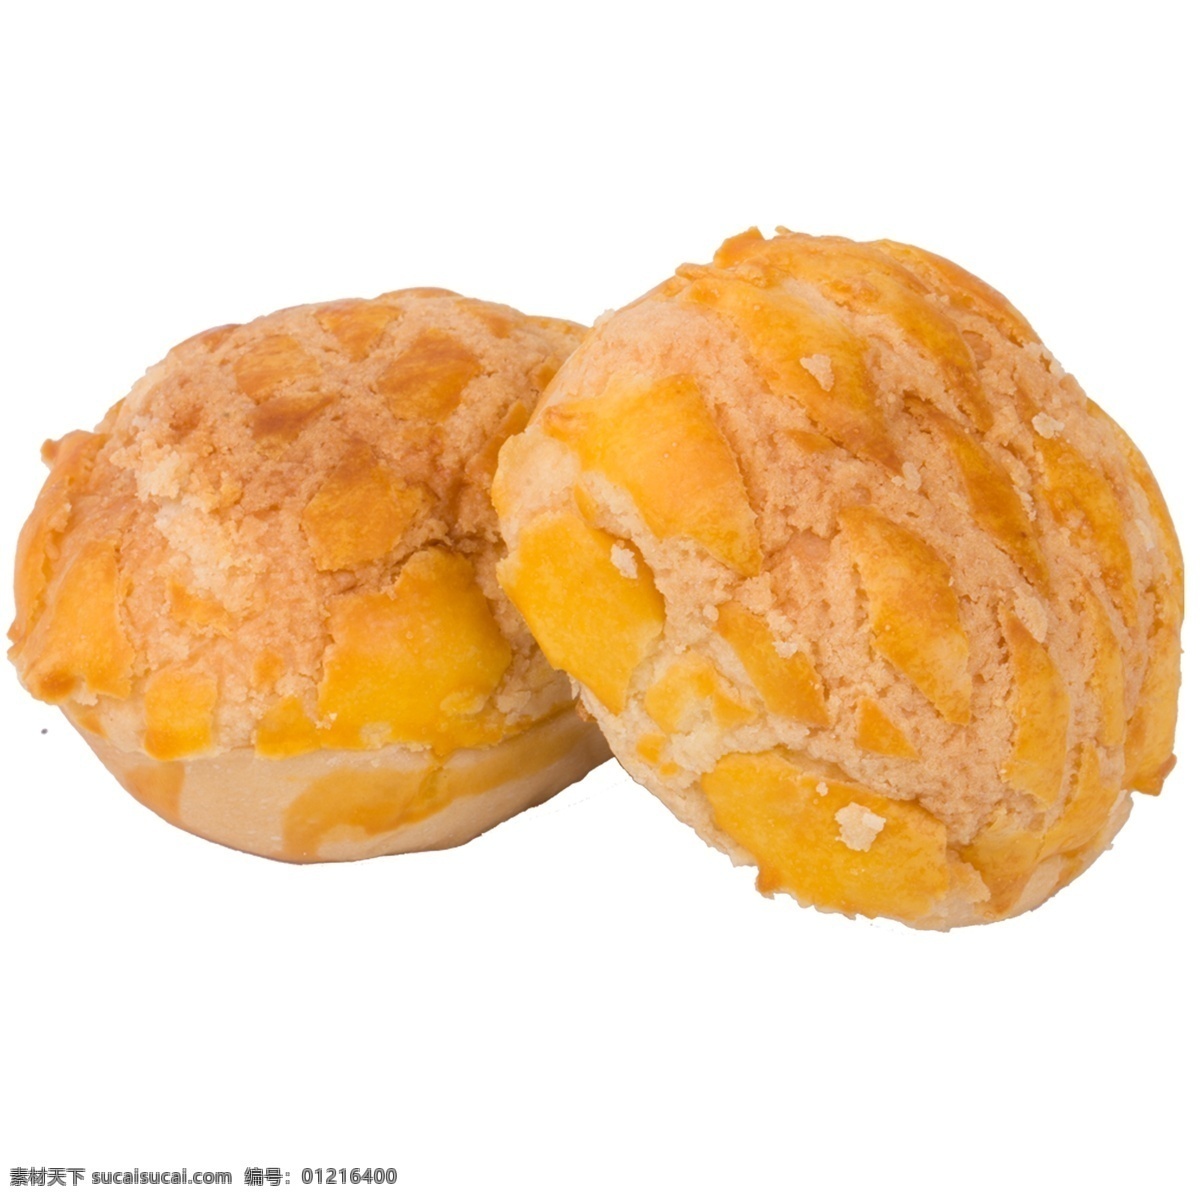 两个 金黄色 美食 饼干 诱人的饼干 饼干食物 油酥饼干 营养食物 饼干png 美食食物 西餐美食